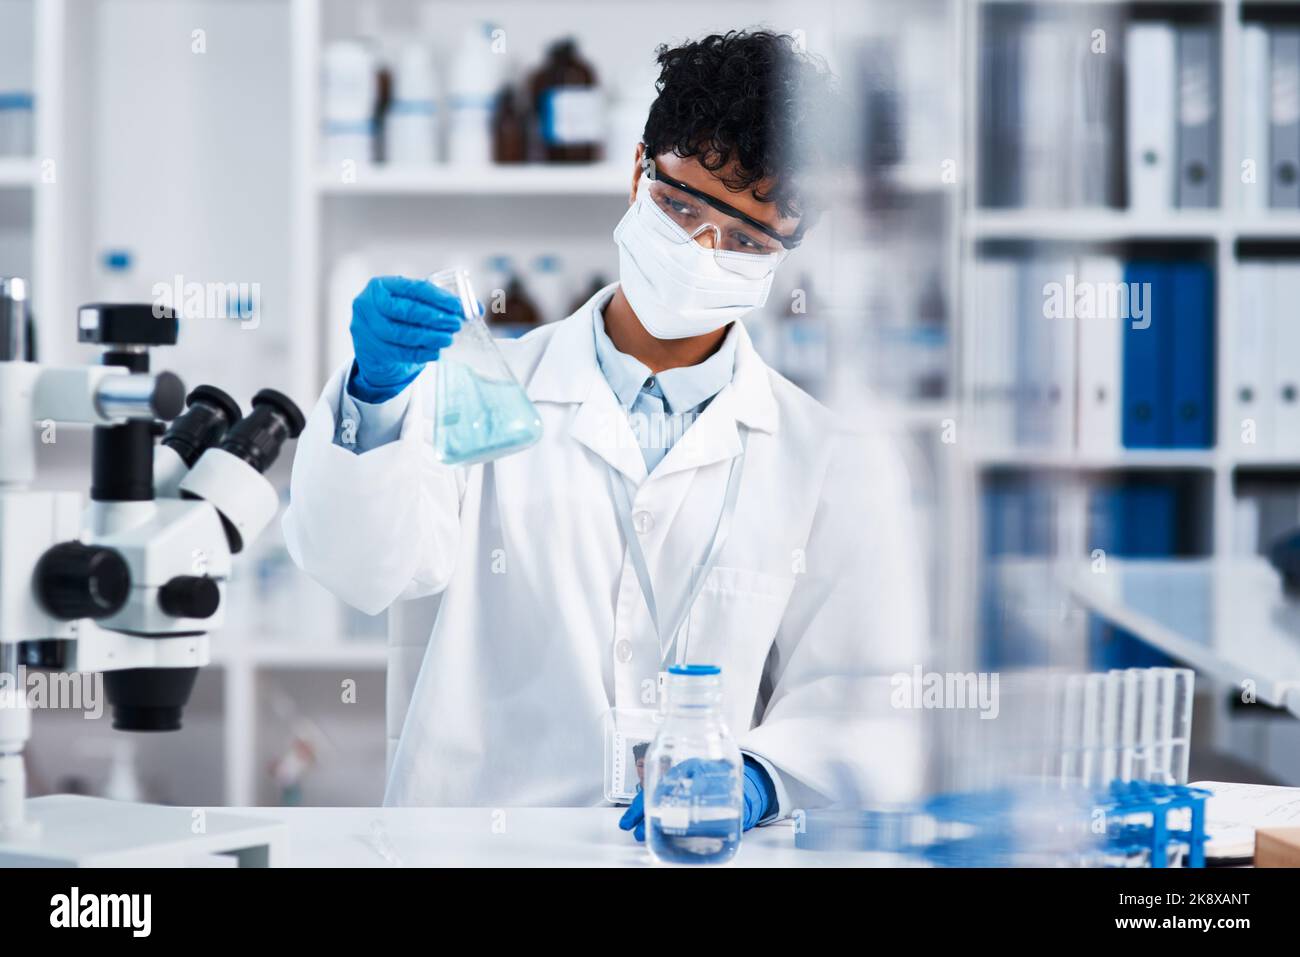 Ich könnte heute einige neue Durchbrüche machen: Ein junger Wissenschaftler, der einen Becher in einem Labor hält. Stockfoto